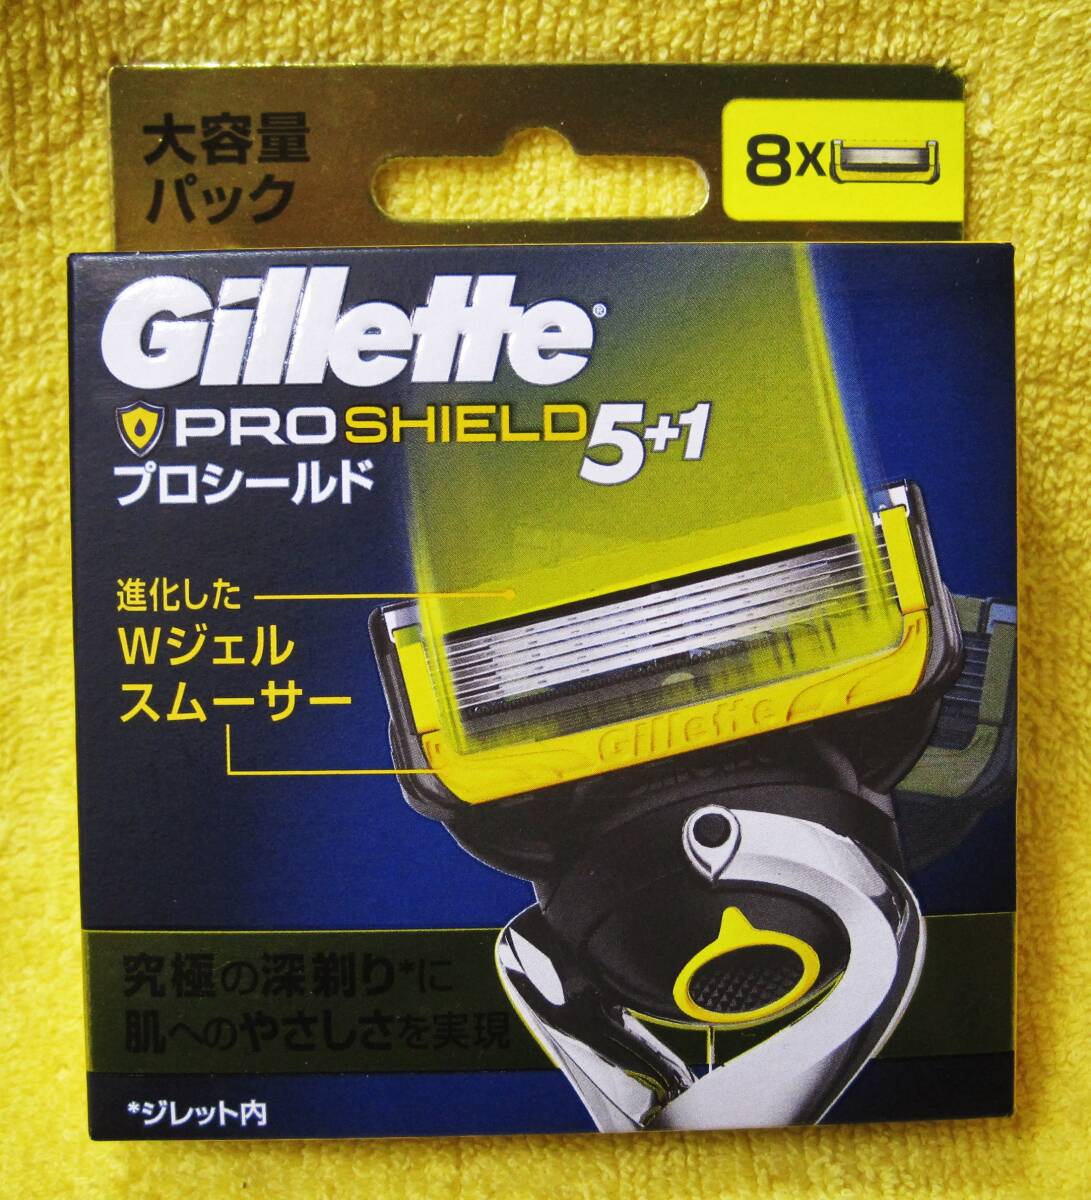 *[ unopened ]ji let Pro shield Gillette PROSHIELD 5+1 razor 8ko go in * postage 140 jpy ~